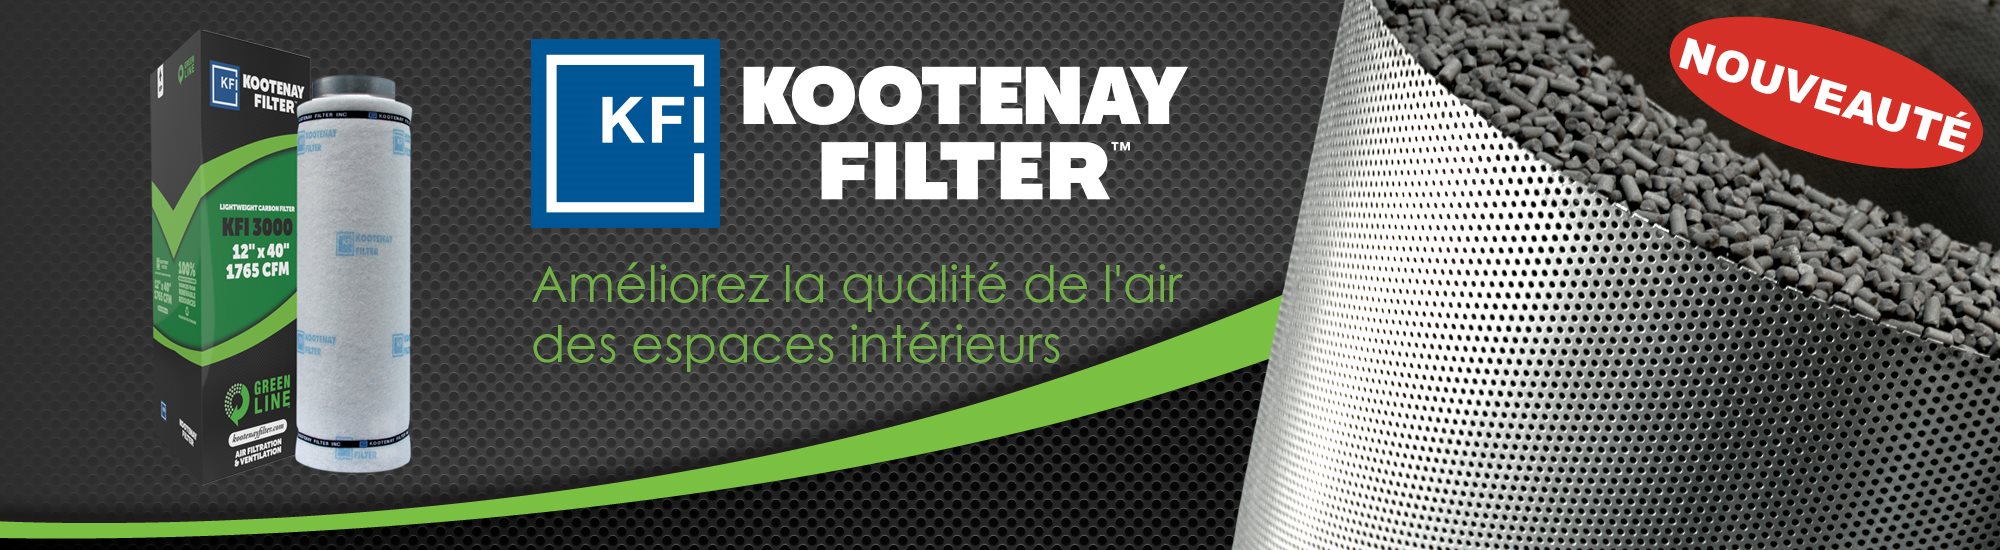 kootenay_slider_fr